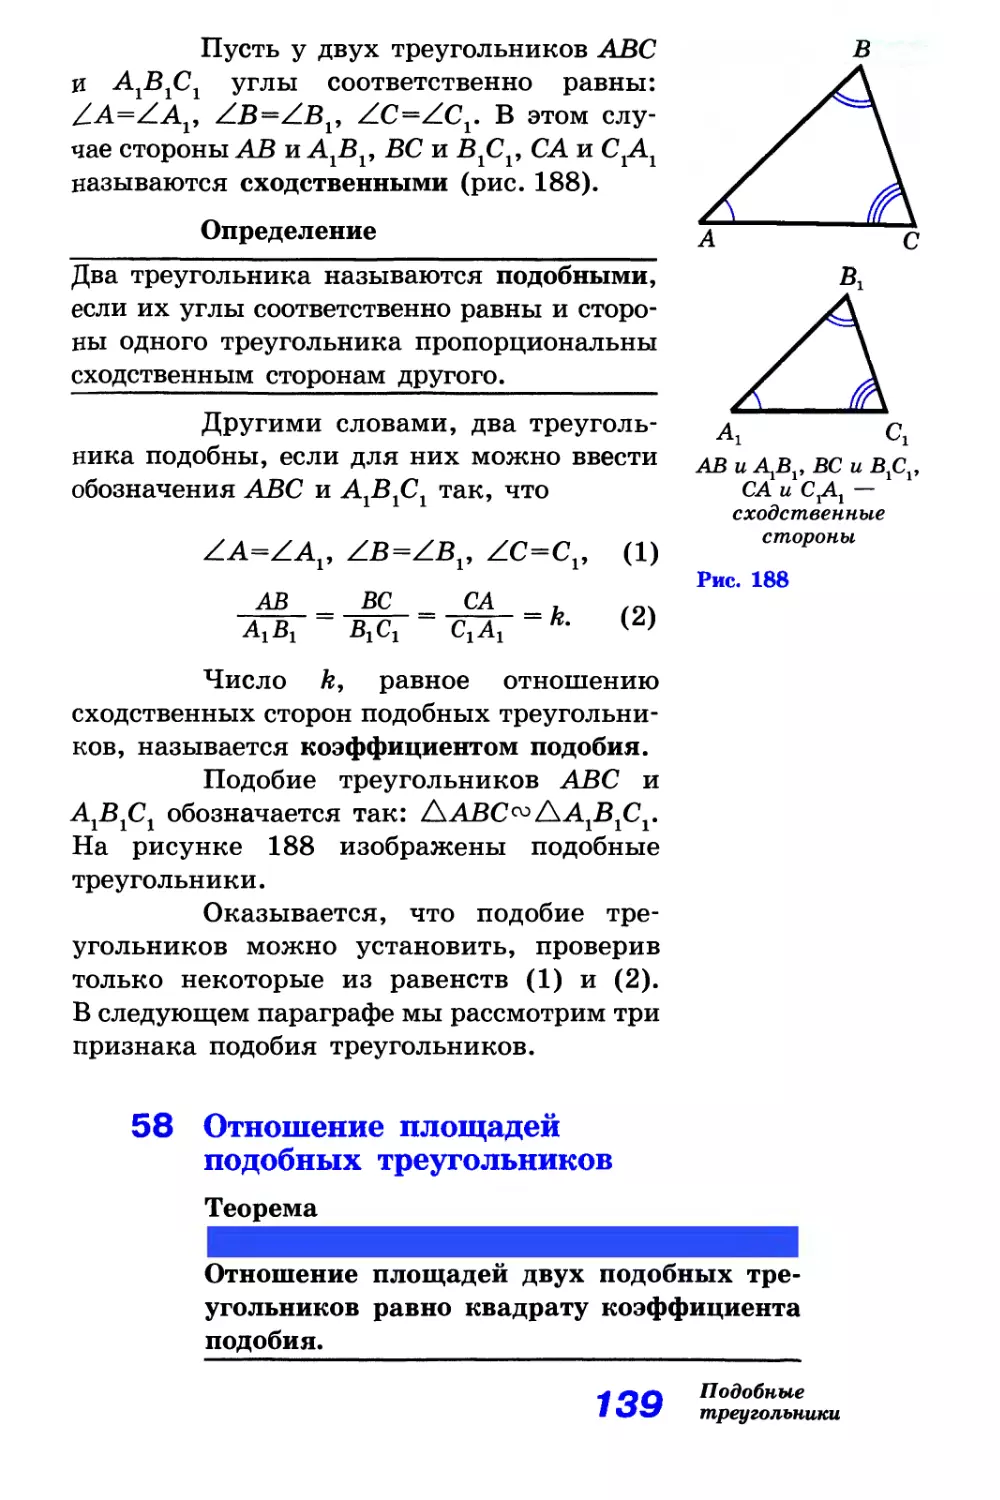 58. Отношение площадей подобных треугольников